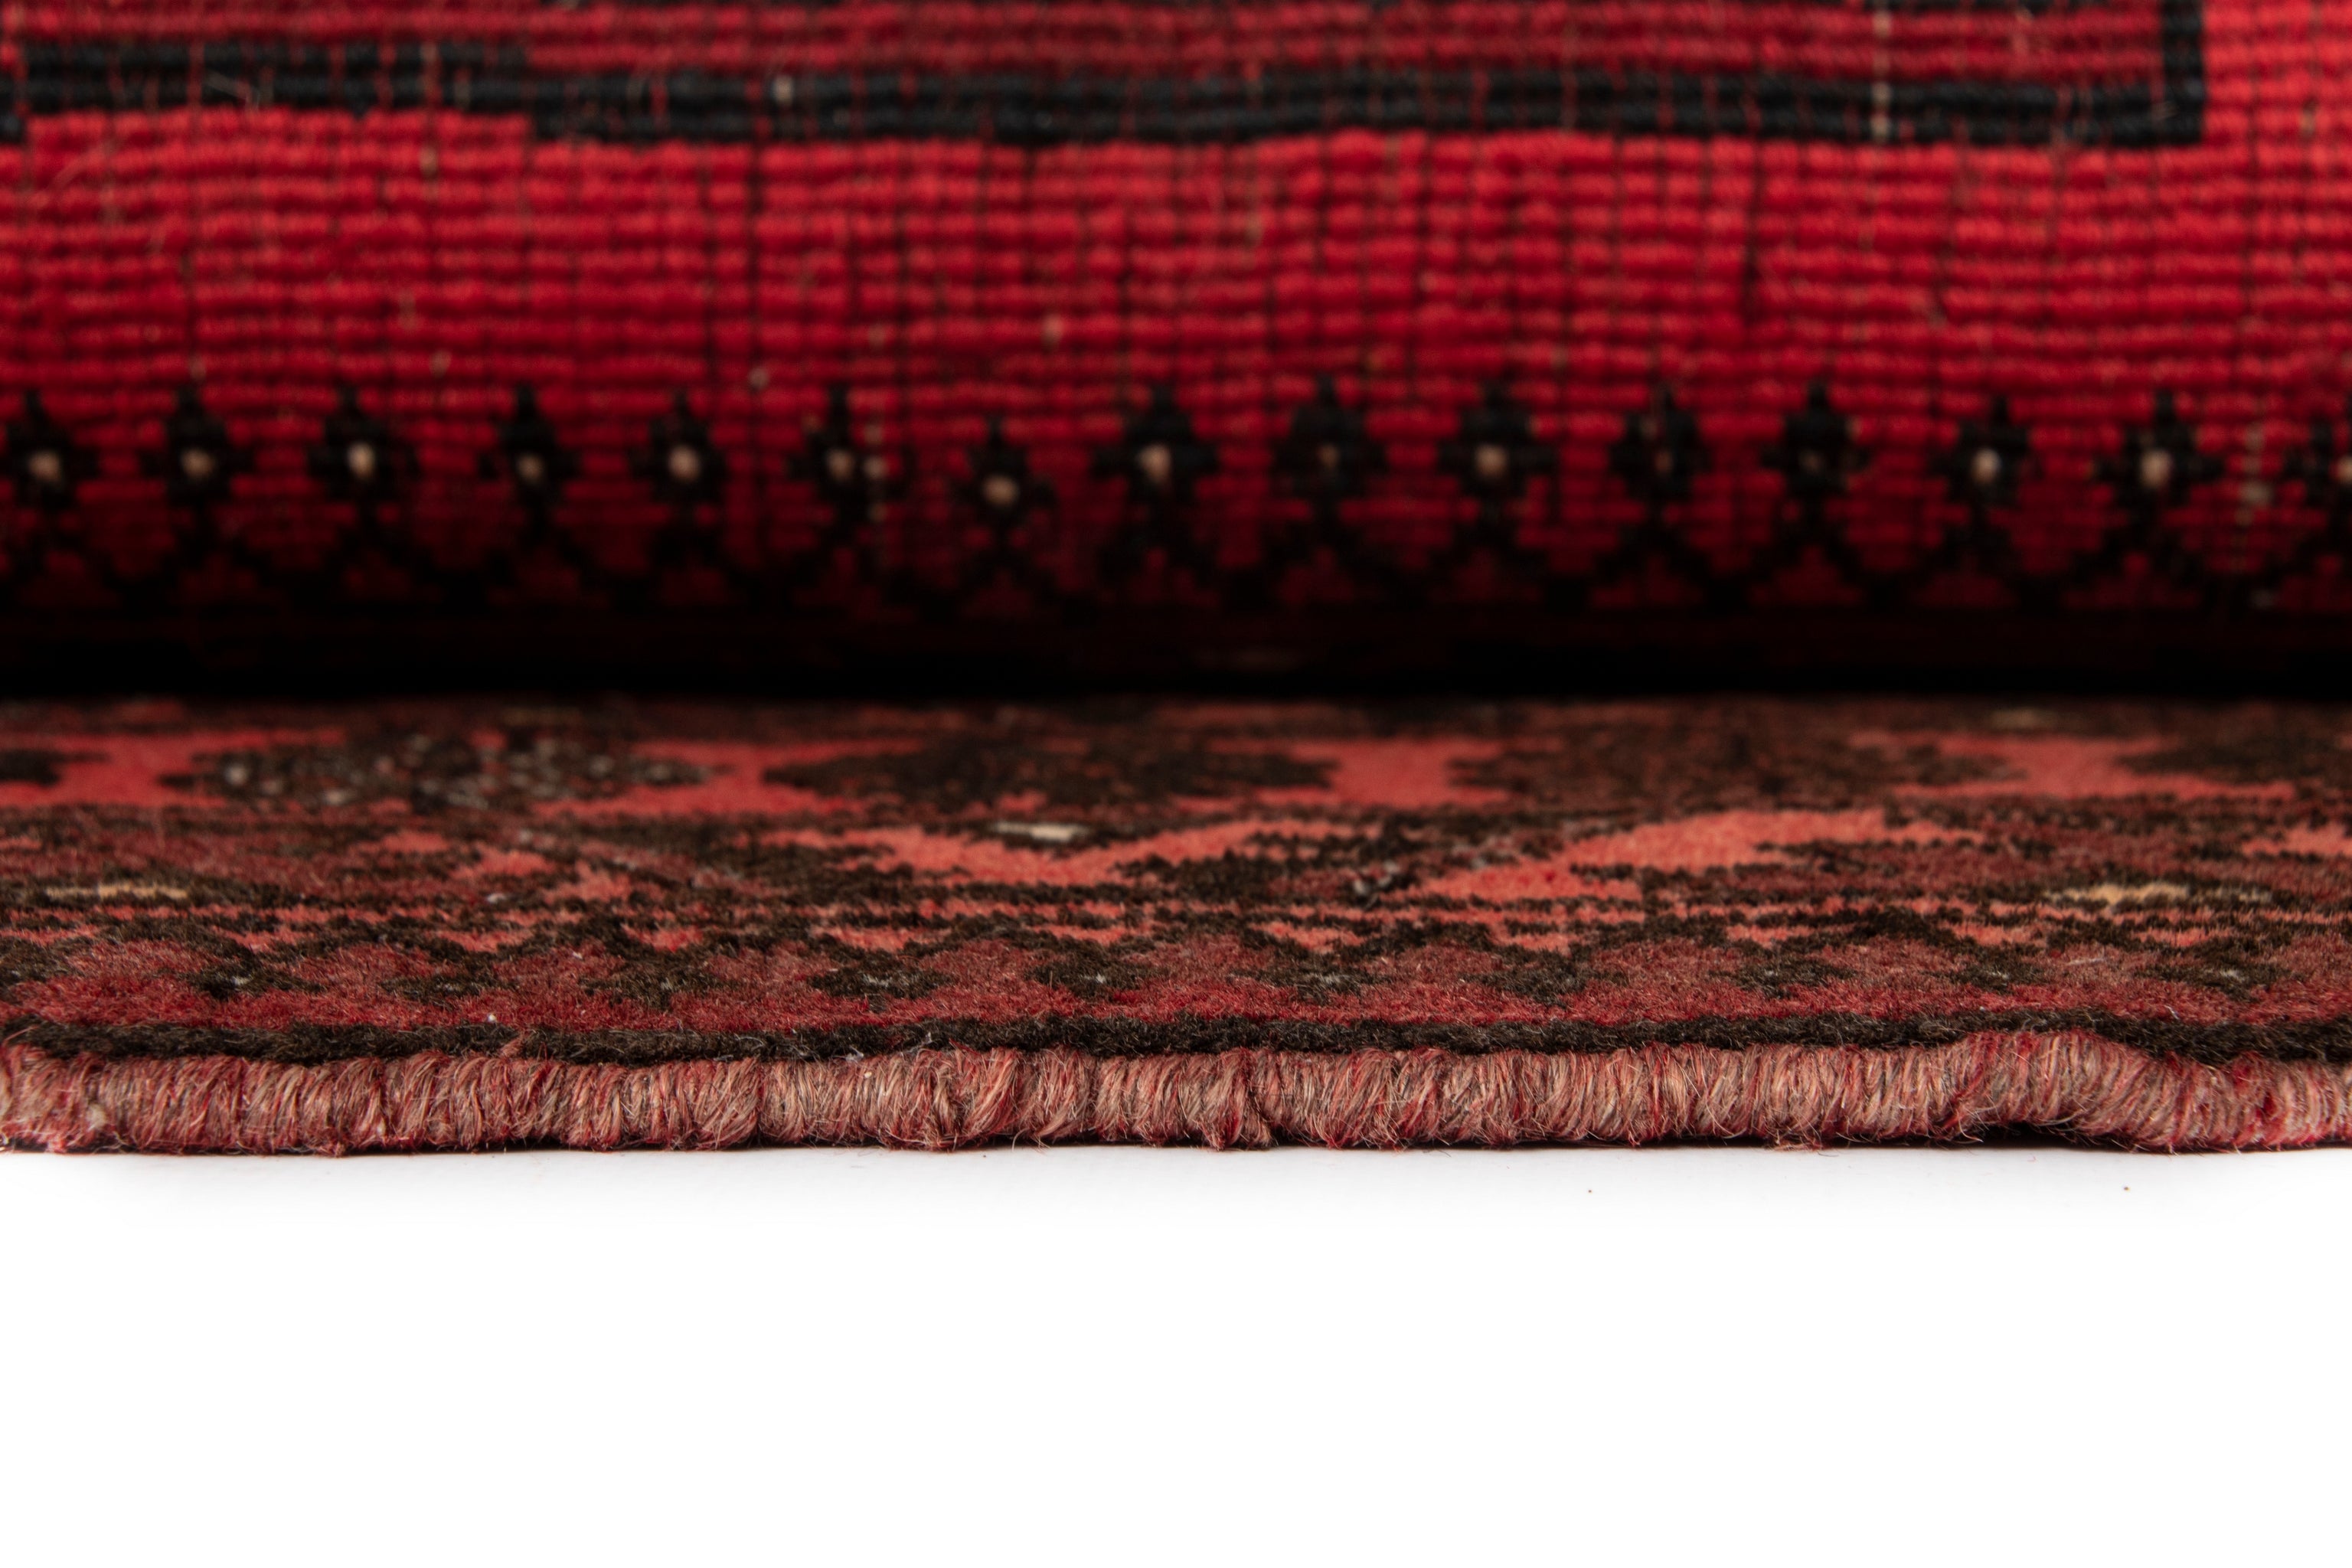 128x86  Afghan in Rot präsentiert im Onlineshop von KAQTU Design AG. Teppich ist von Vidal